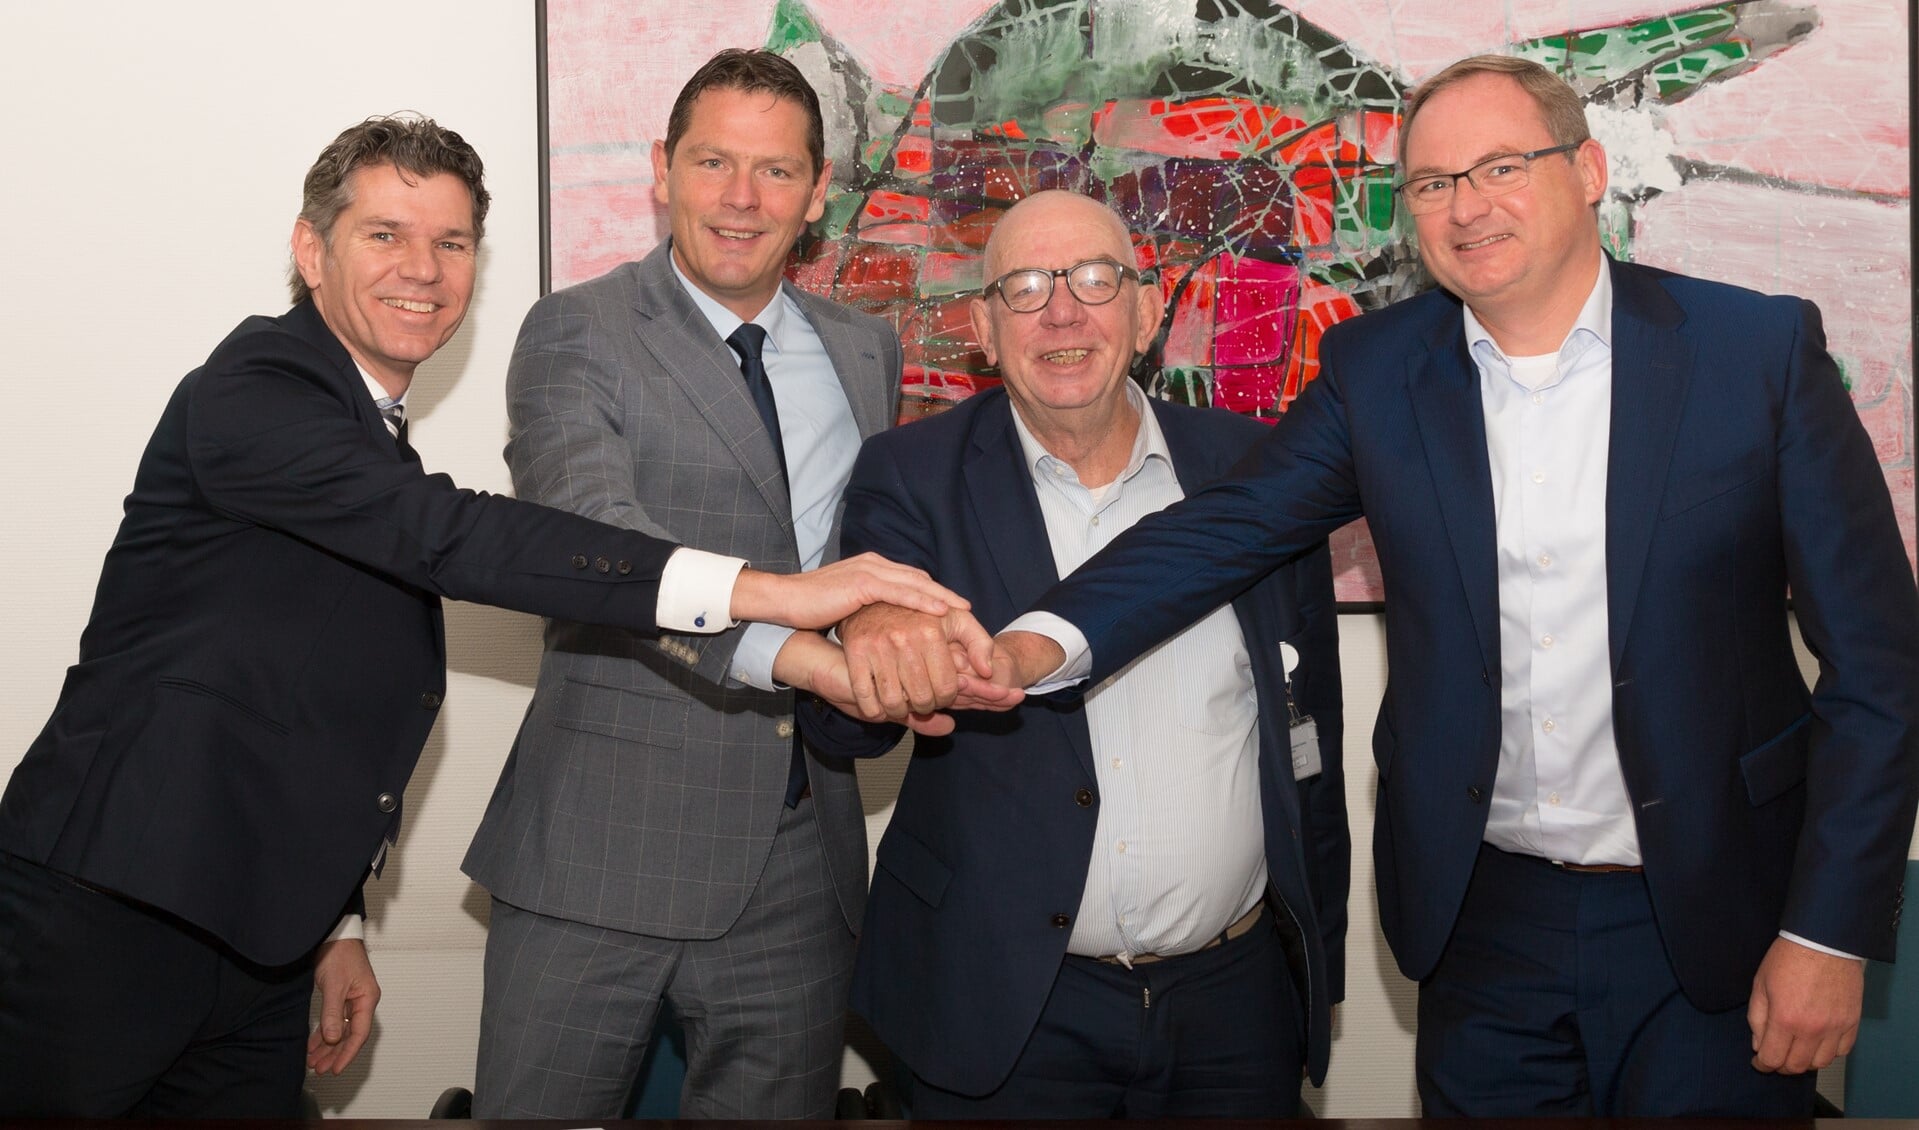 v.l.n.r. Rob Gerrits (Rabobank), Peter Langenbach (SMC), Paul van der Velden (SMC) en Caspert van der Wel (Rabobank)